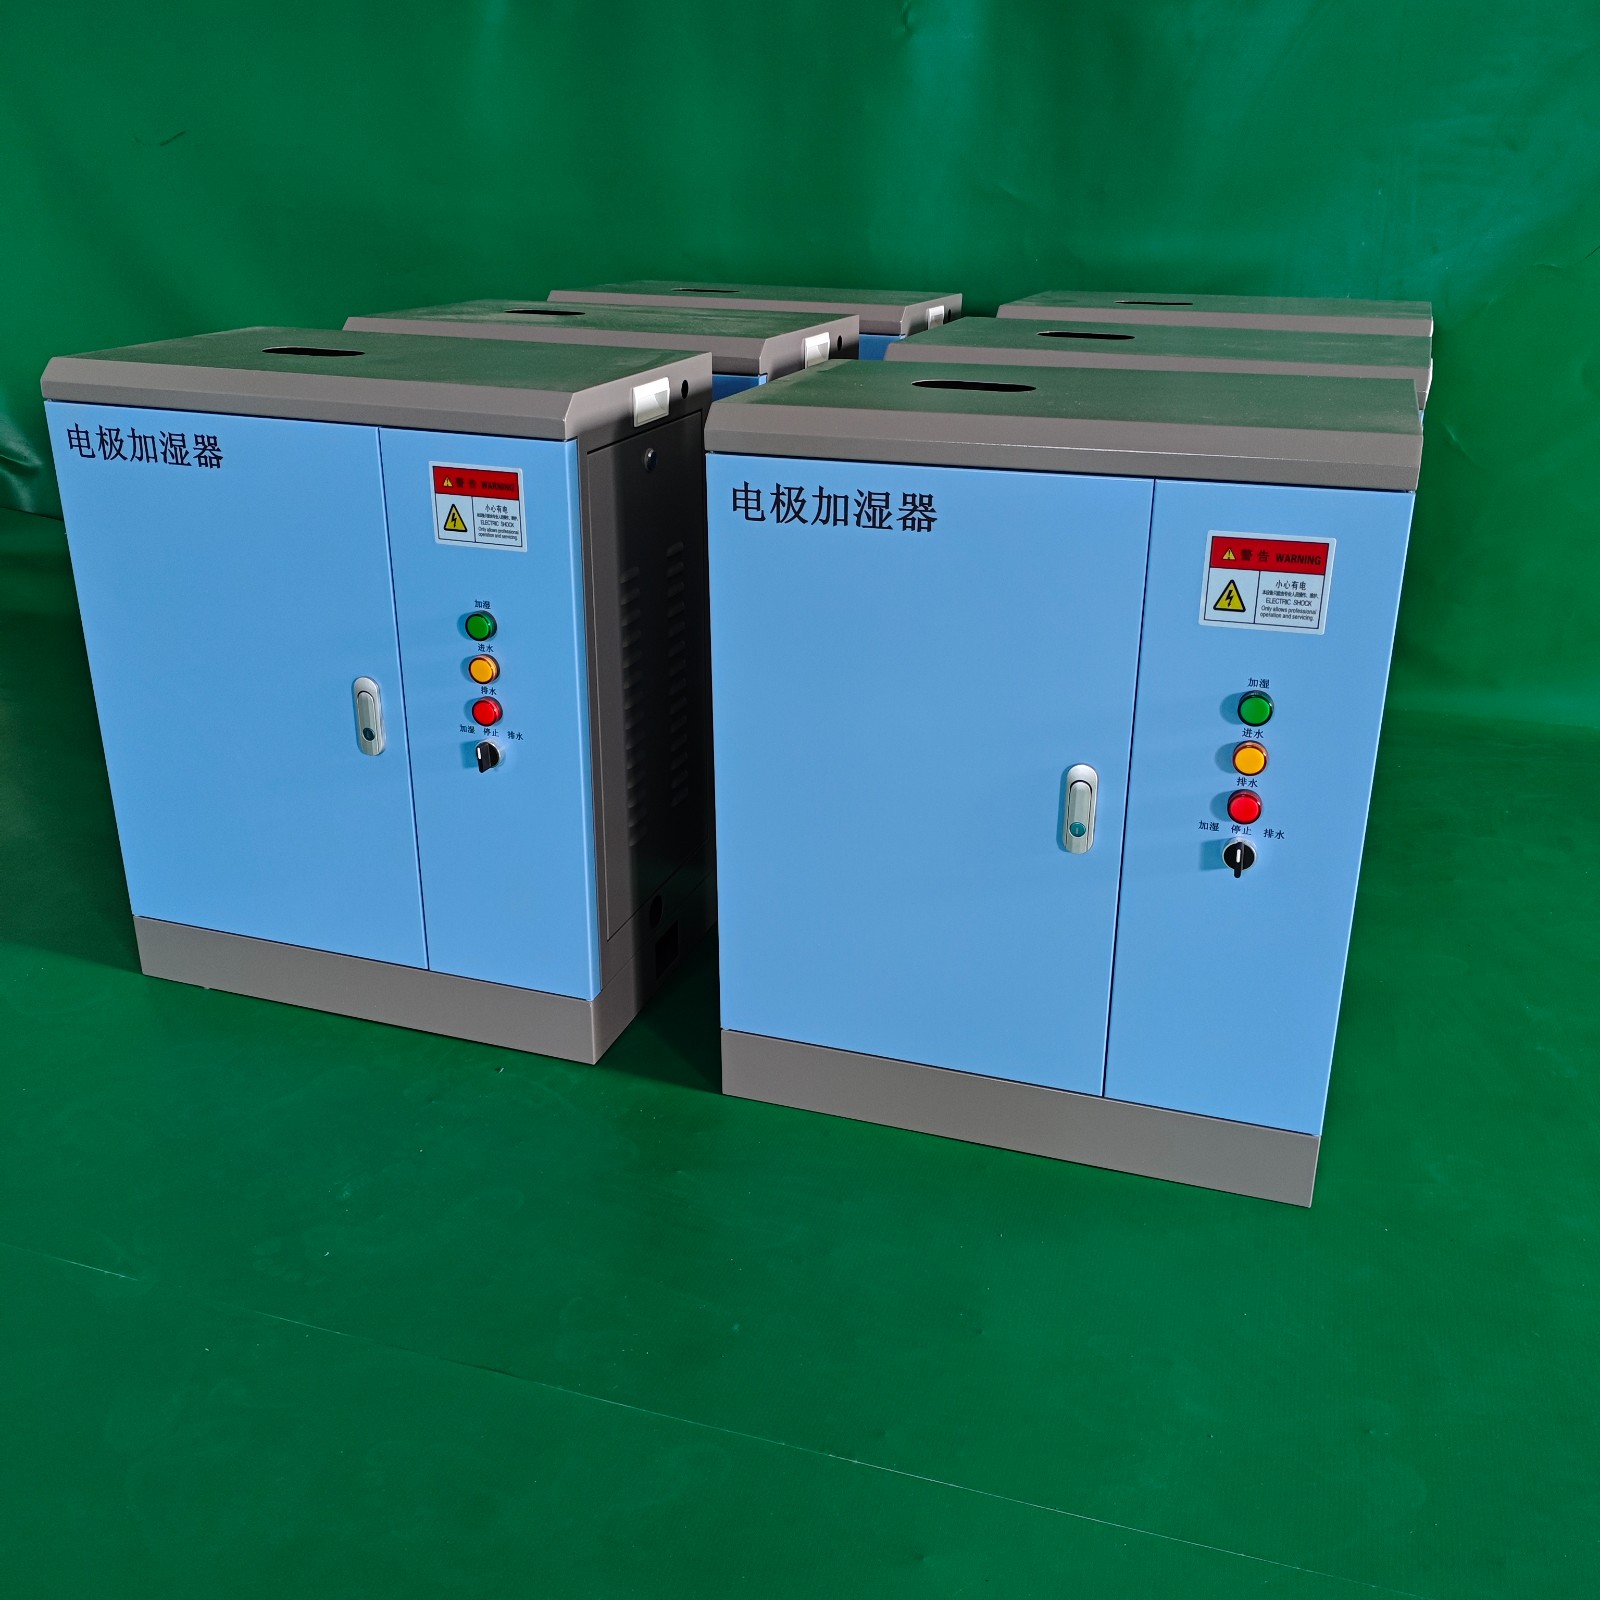 睿达32公斤电极加湿器自动型、组合式空调加湿器配套图1